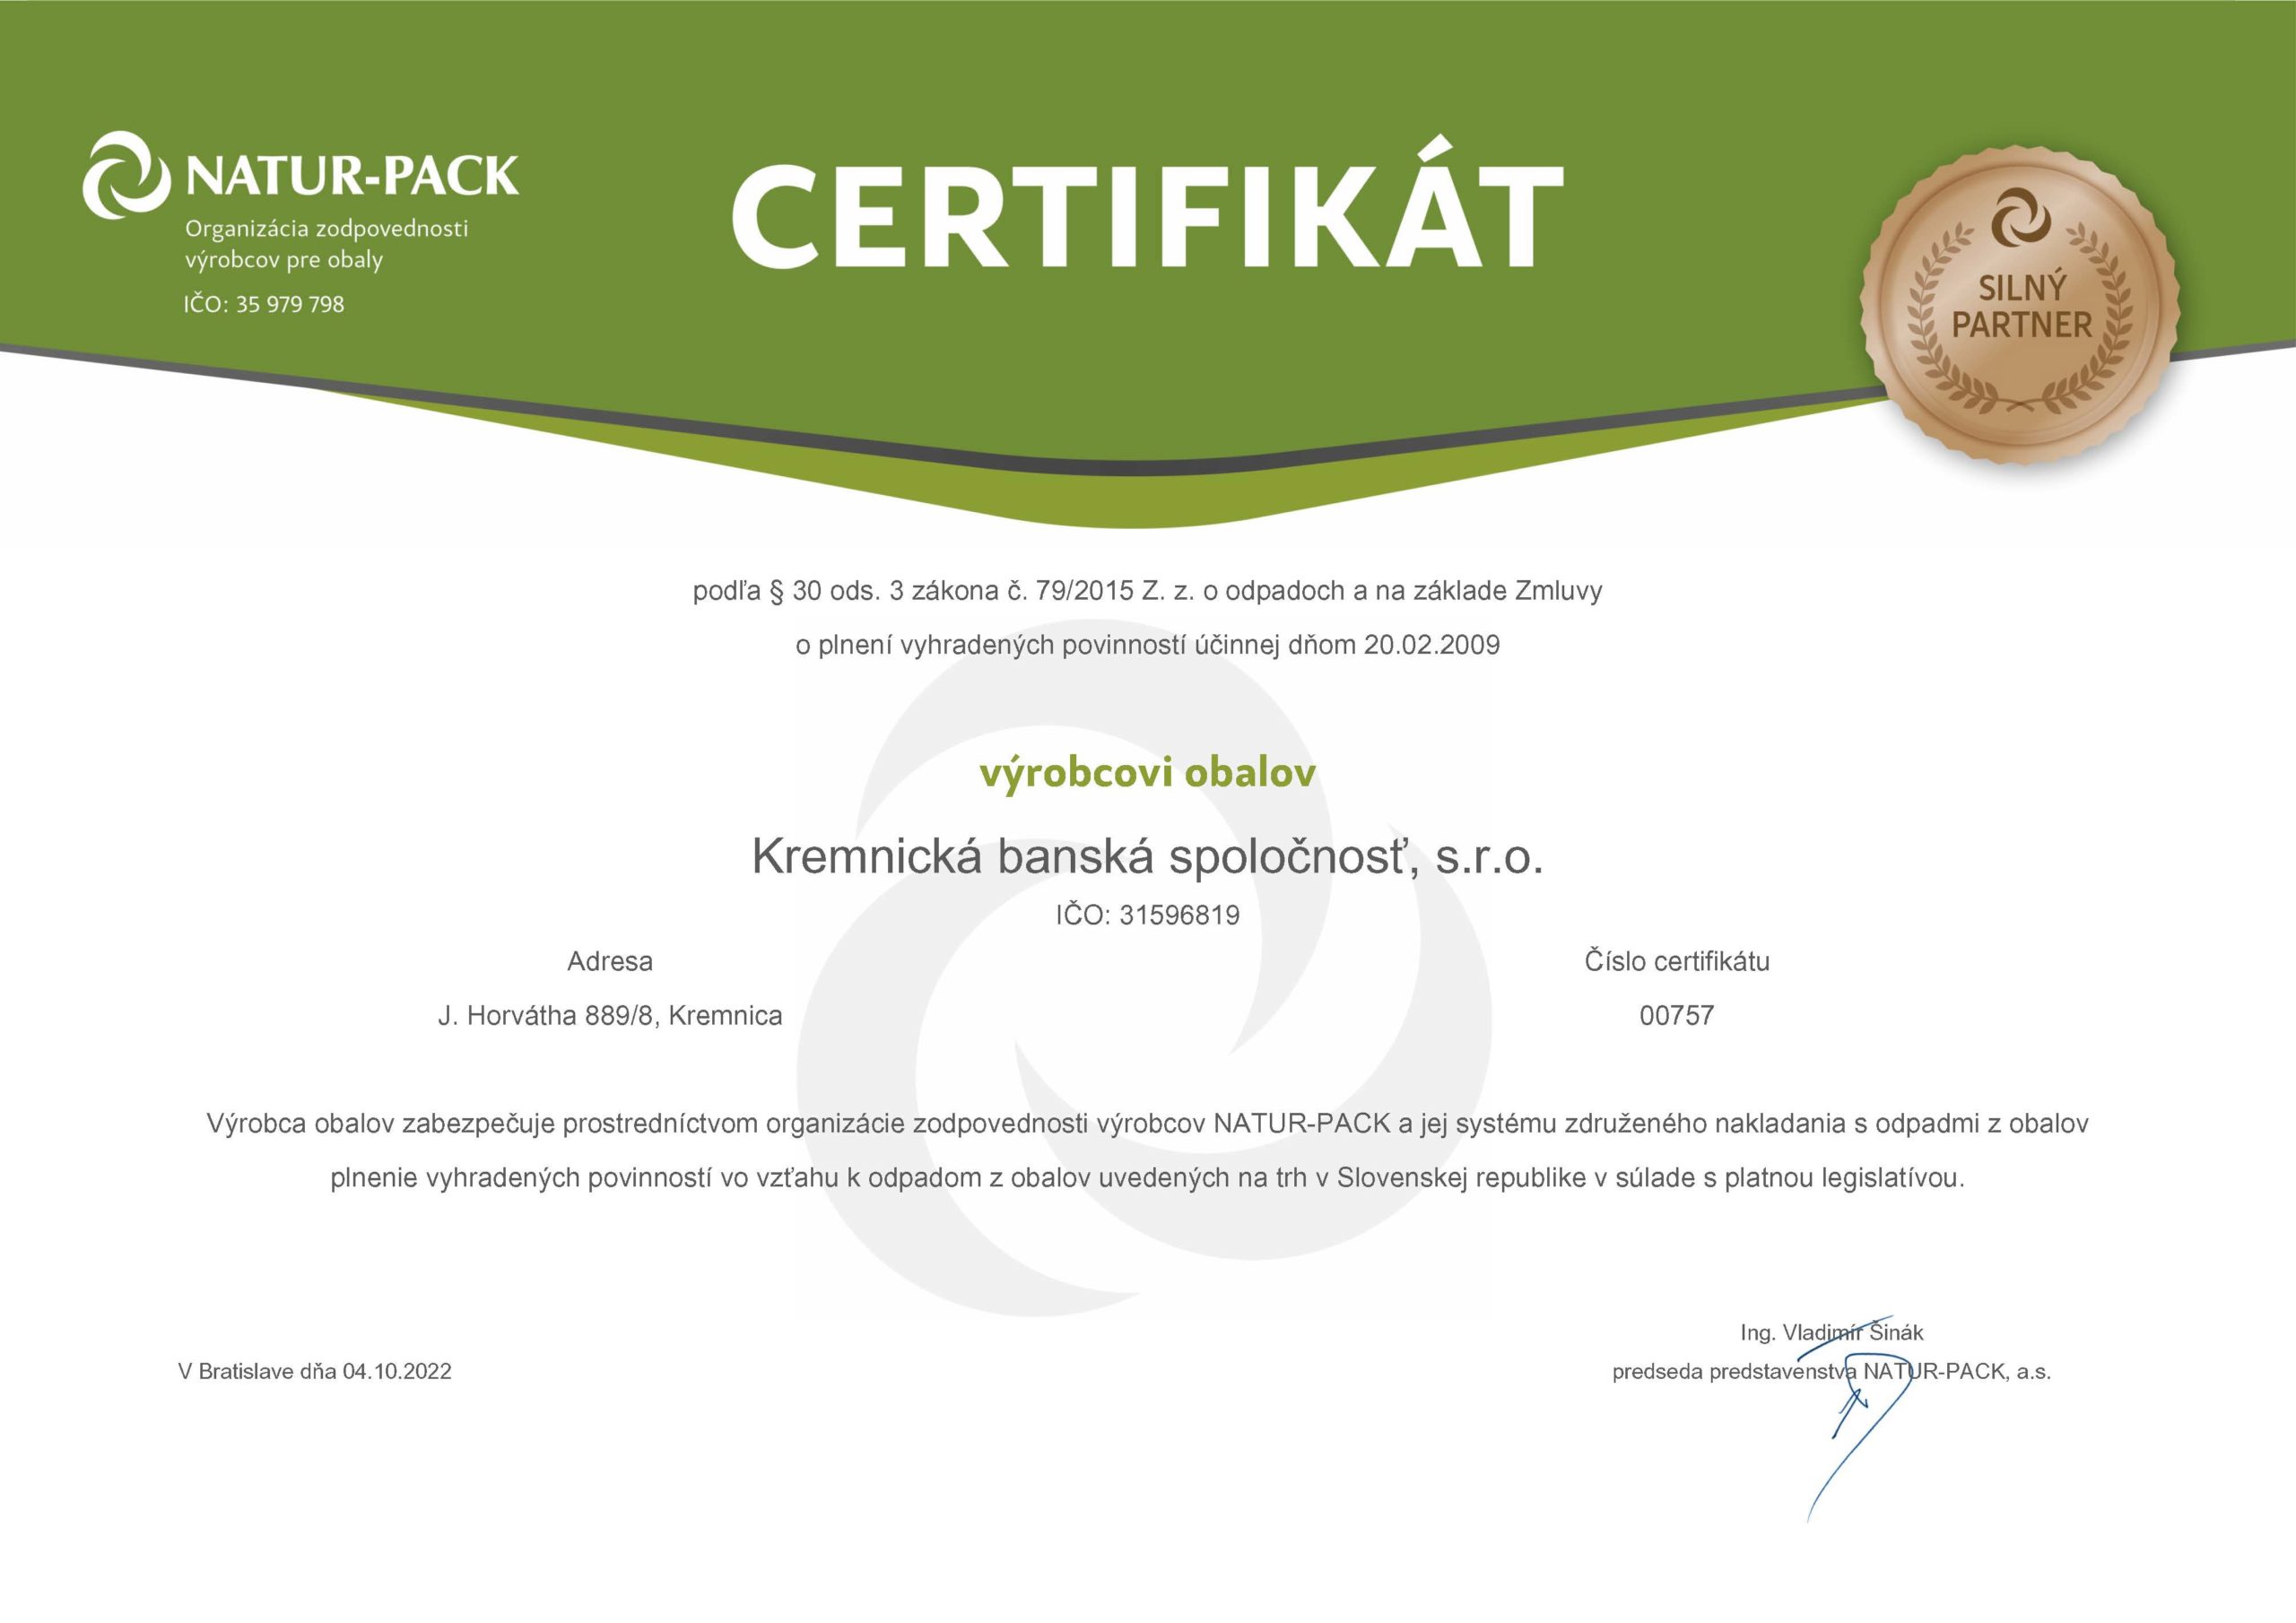 Certifikát výrobcovi obalov